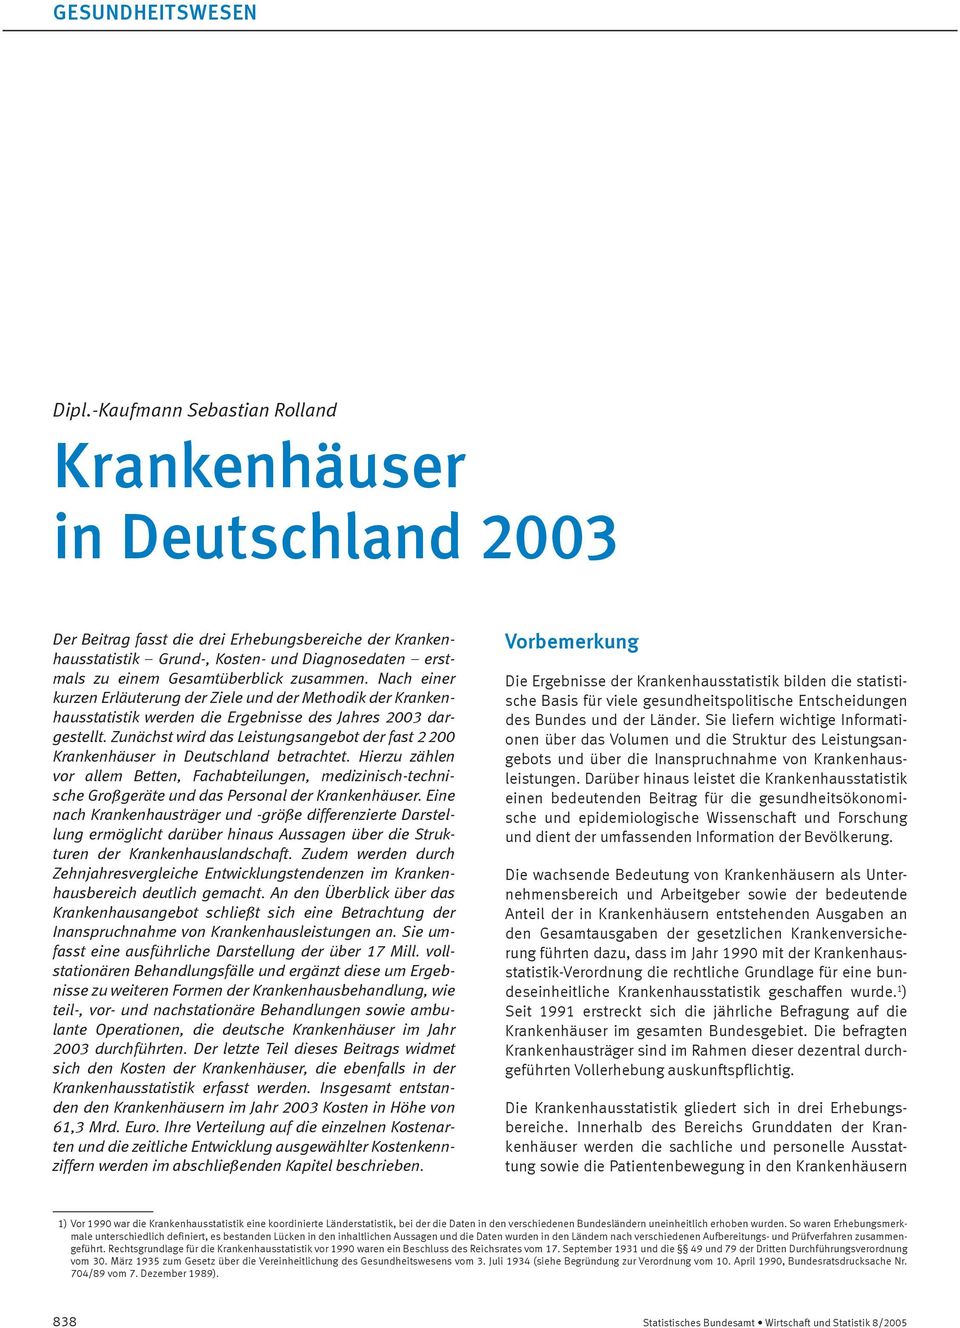 Zunächst wird das Leistungsangebot der fast 2 200 Krankenhäuser in Deutschland betrachtet.